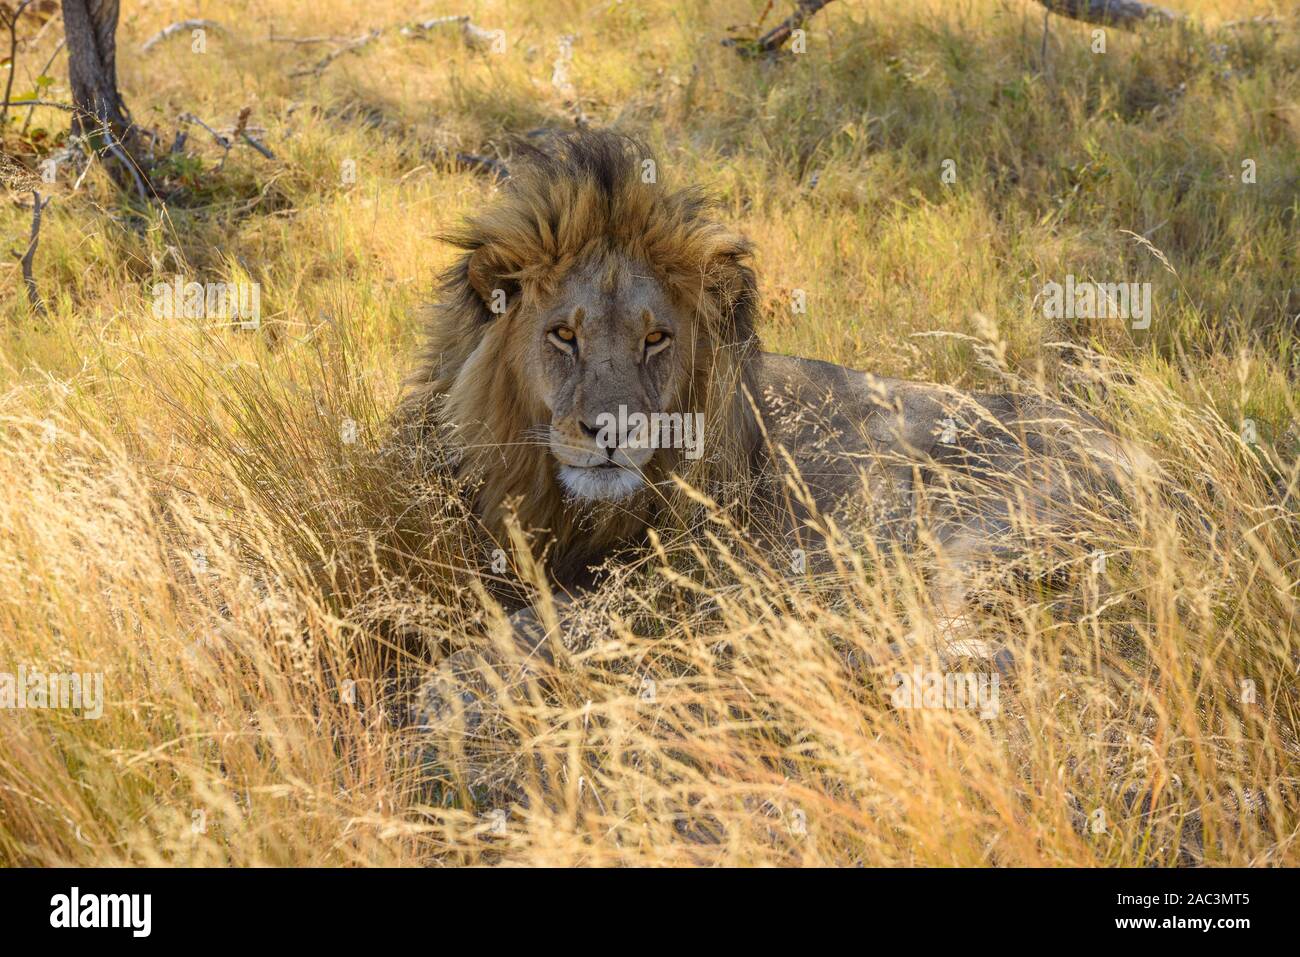 Lion masculin, Panthera leo, en herbe longue, Macatoo, Delta d'Okavango, Botswana Banque D'Images